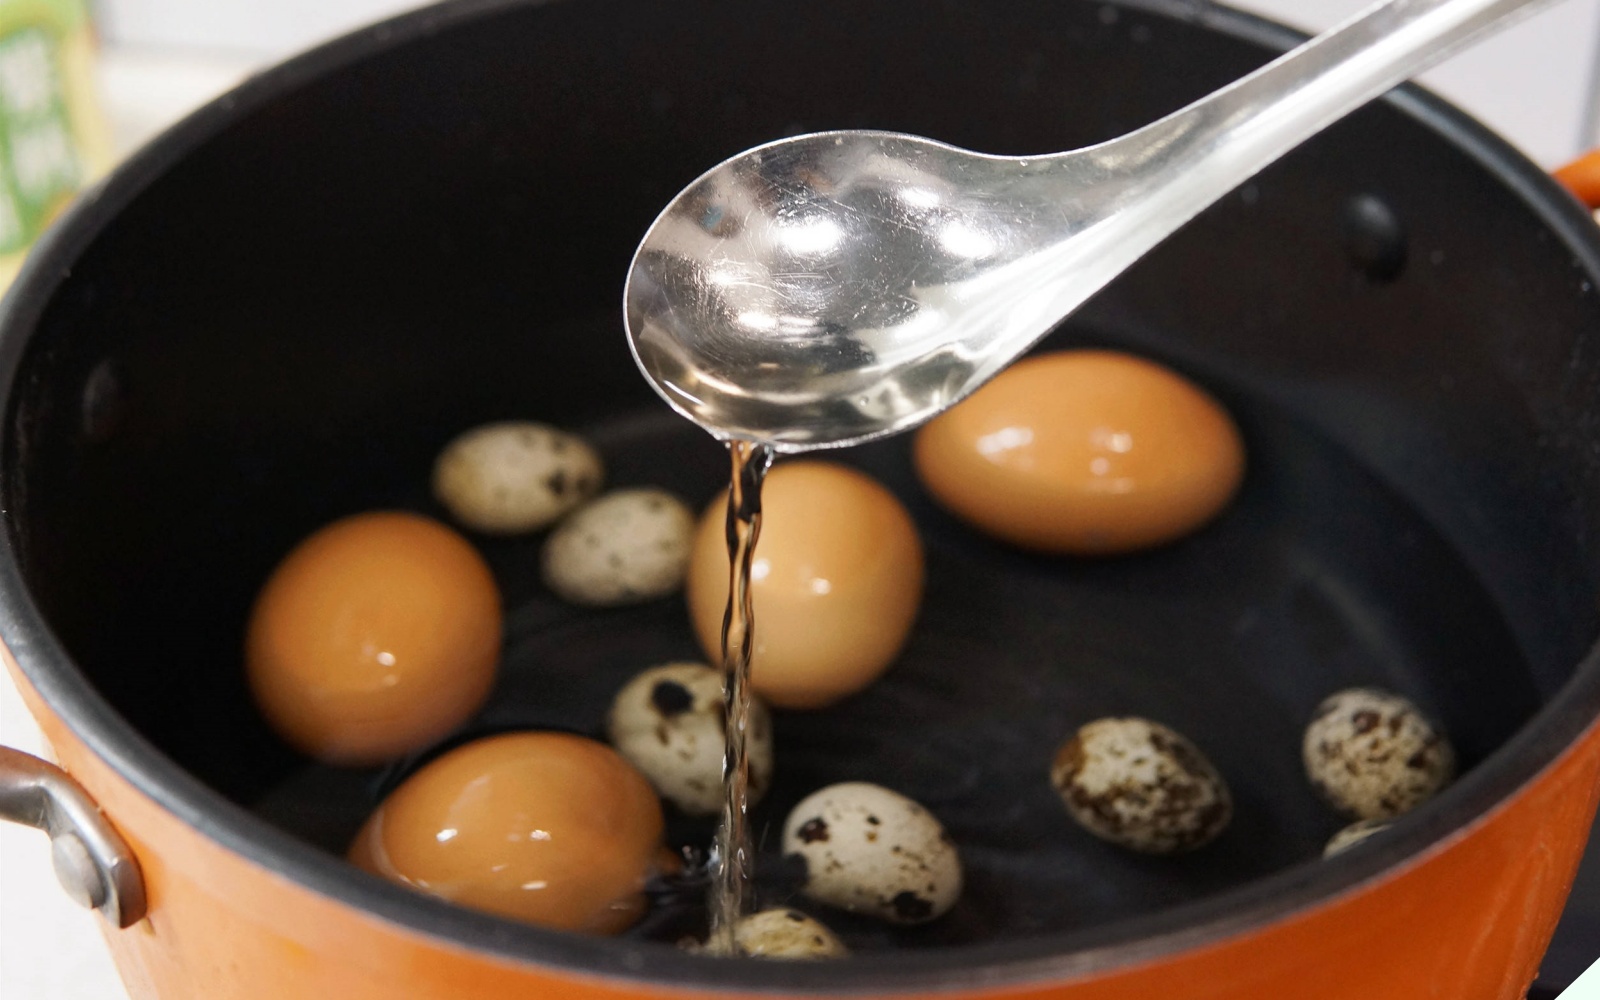 Luộc trứng kiểu này cực kỳ nguy hiểm, nhiều người Việt không biết cứ tưởng ngon